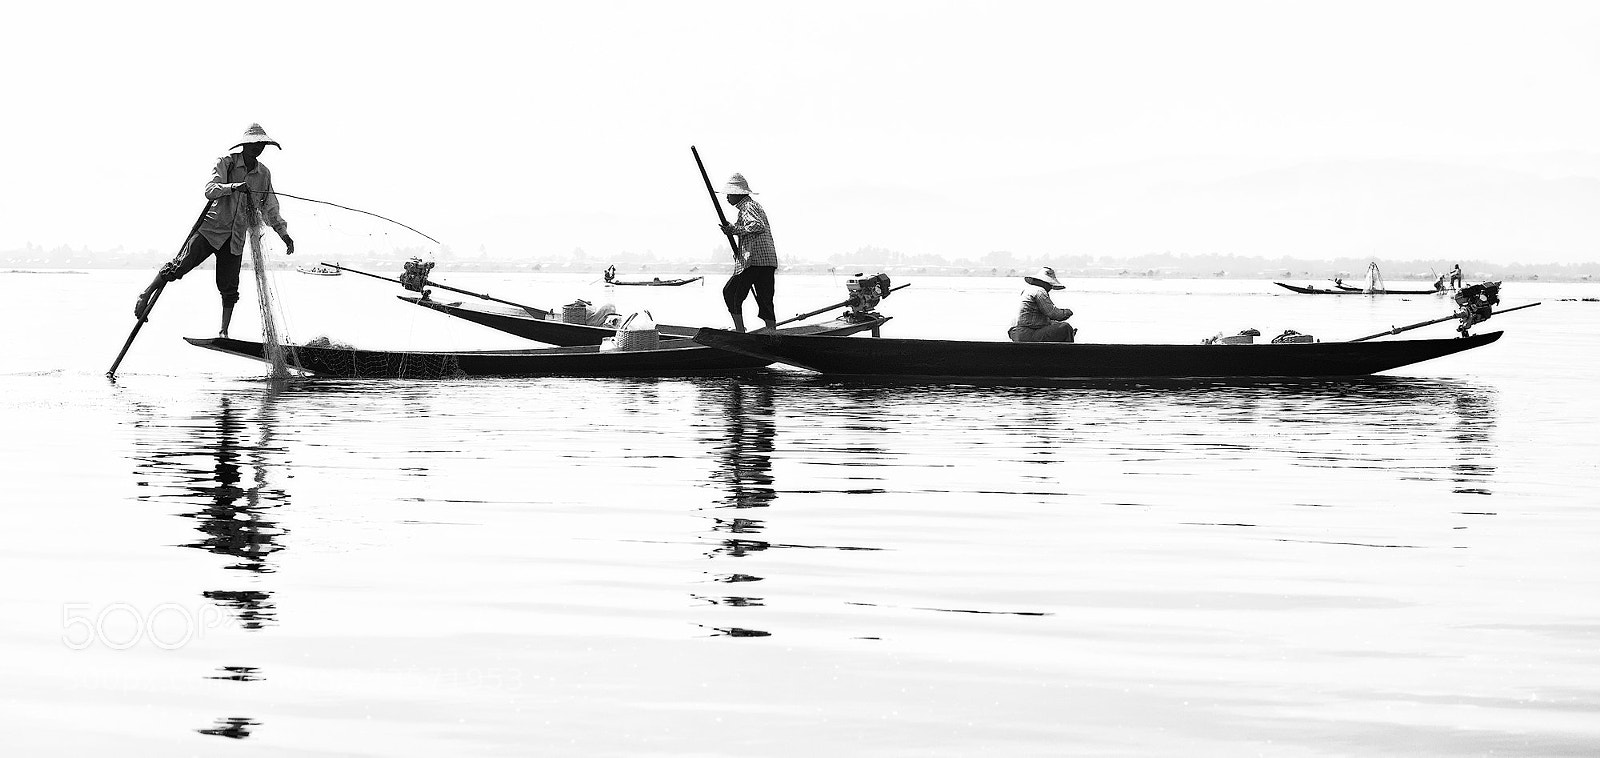 Nikon D750 sample photo. Myanmar fishermen monochrome photography